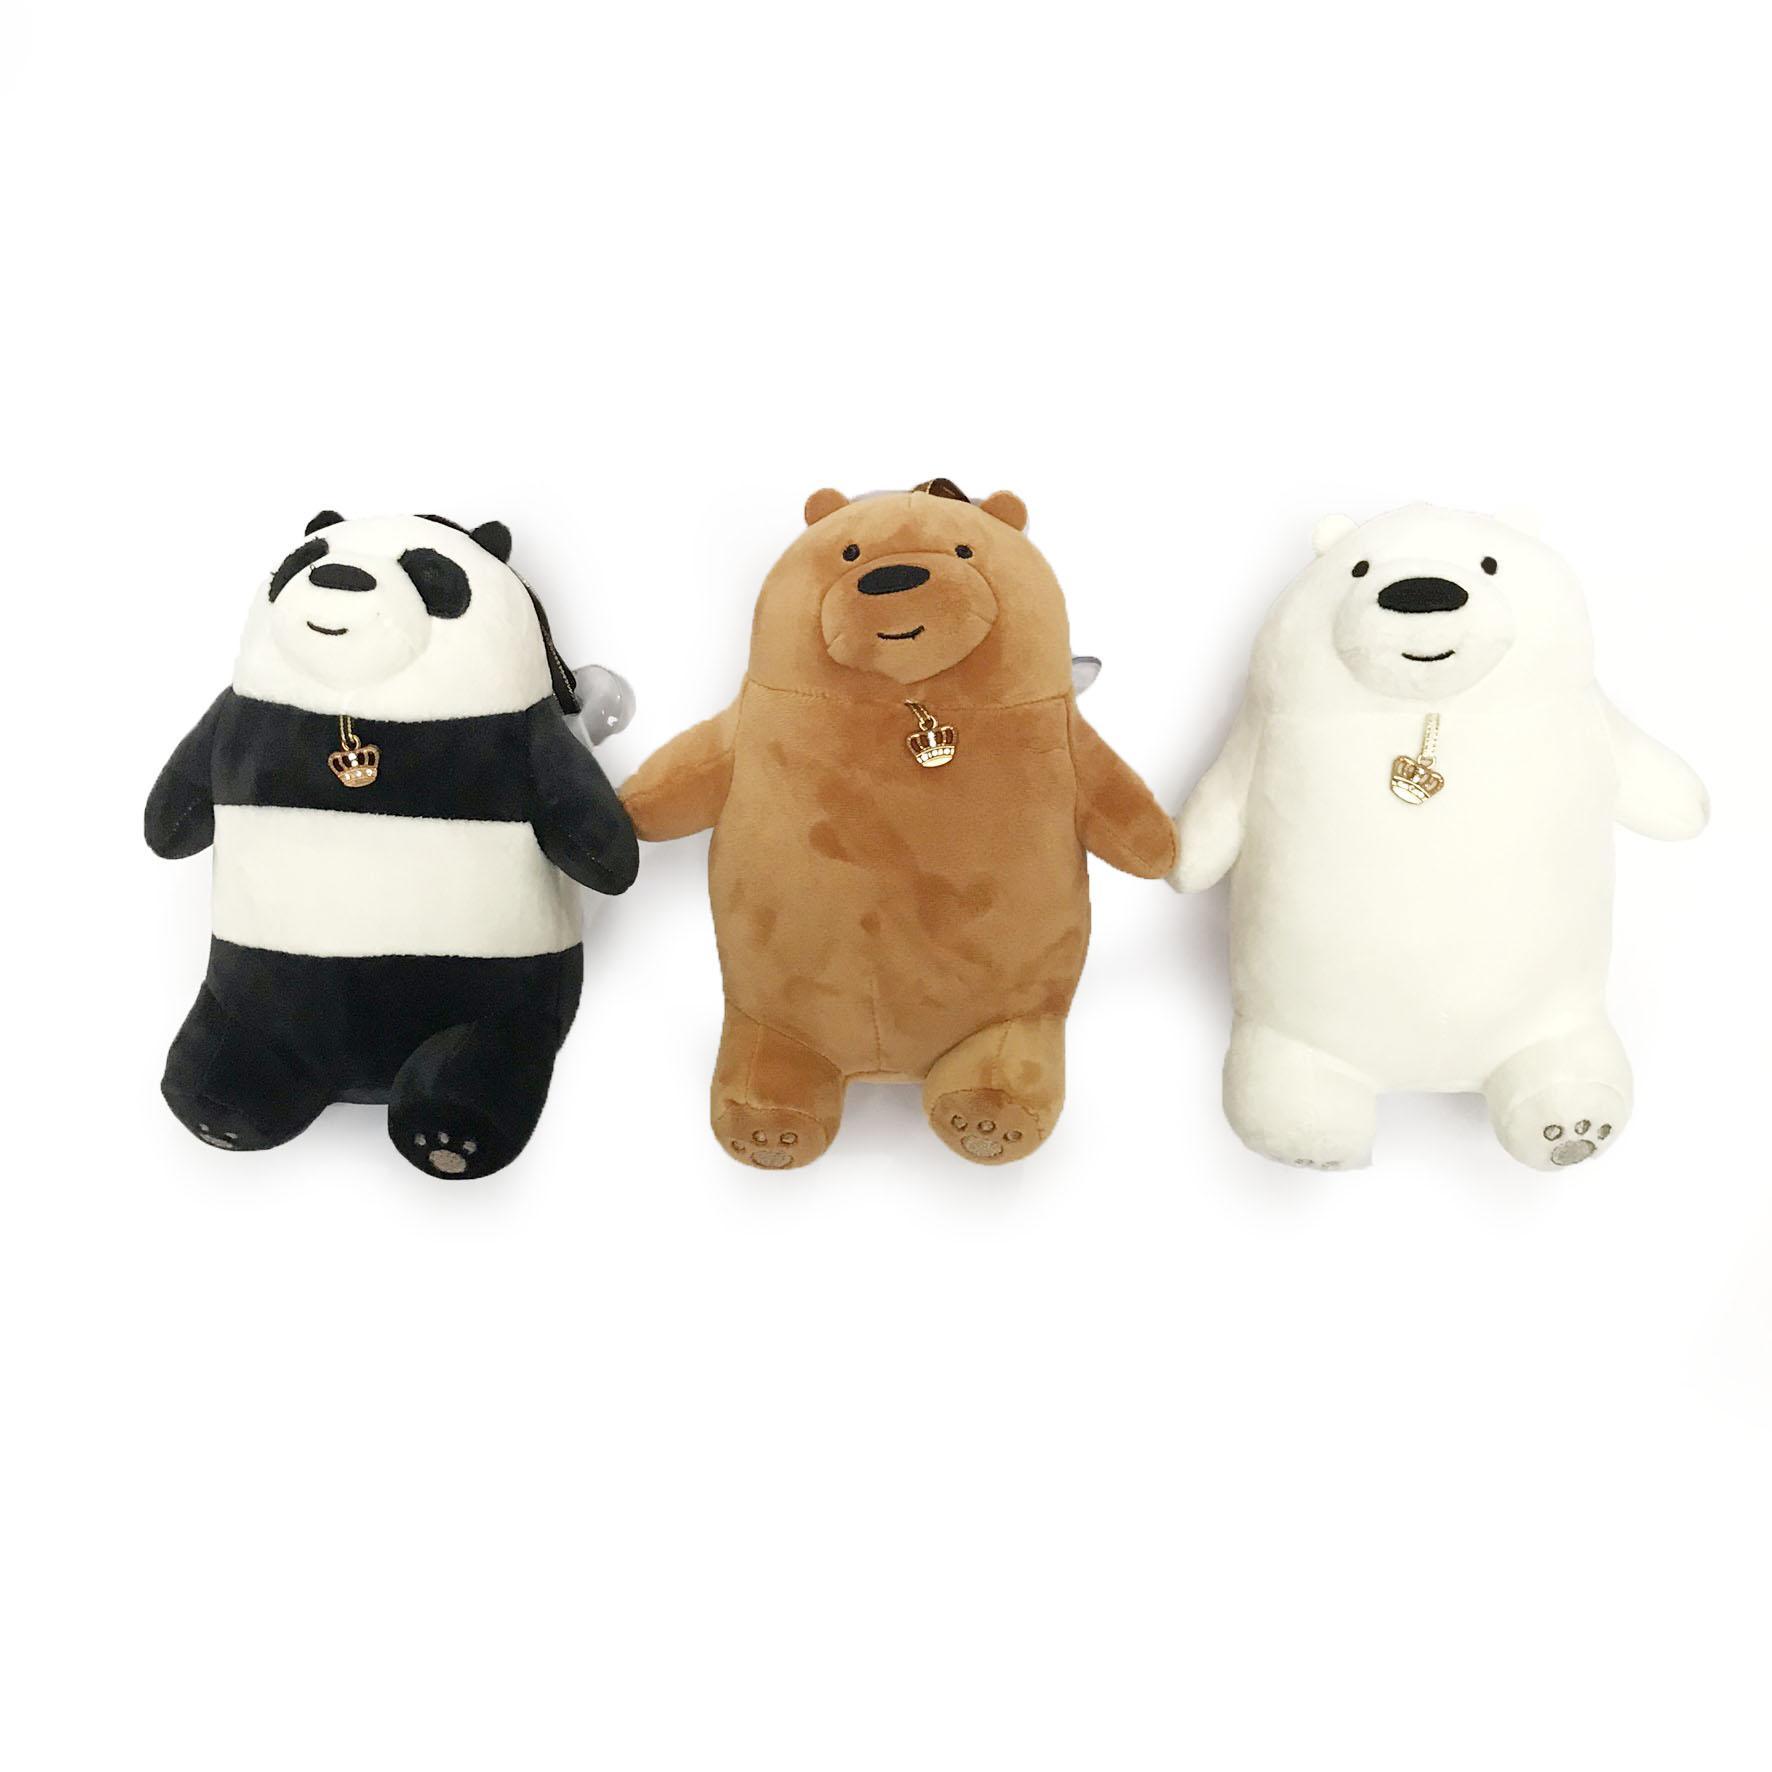 Mô hình trang trí 3D anh em gấu We Bare Bears Chúng tôi đơn giản là gấu  chính hãng Miniso  Đồ chơi mô hình  BiBiOnevn